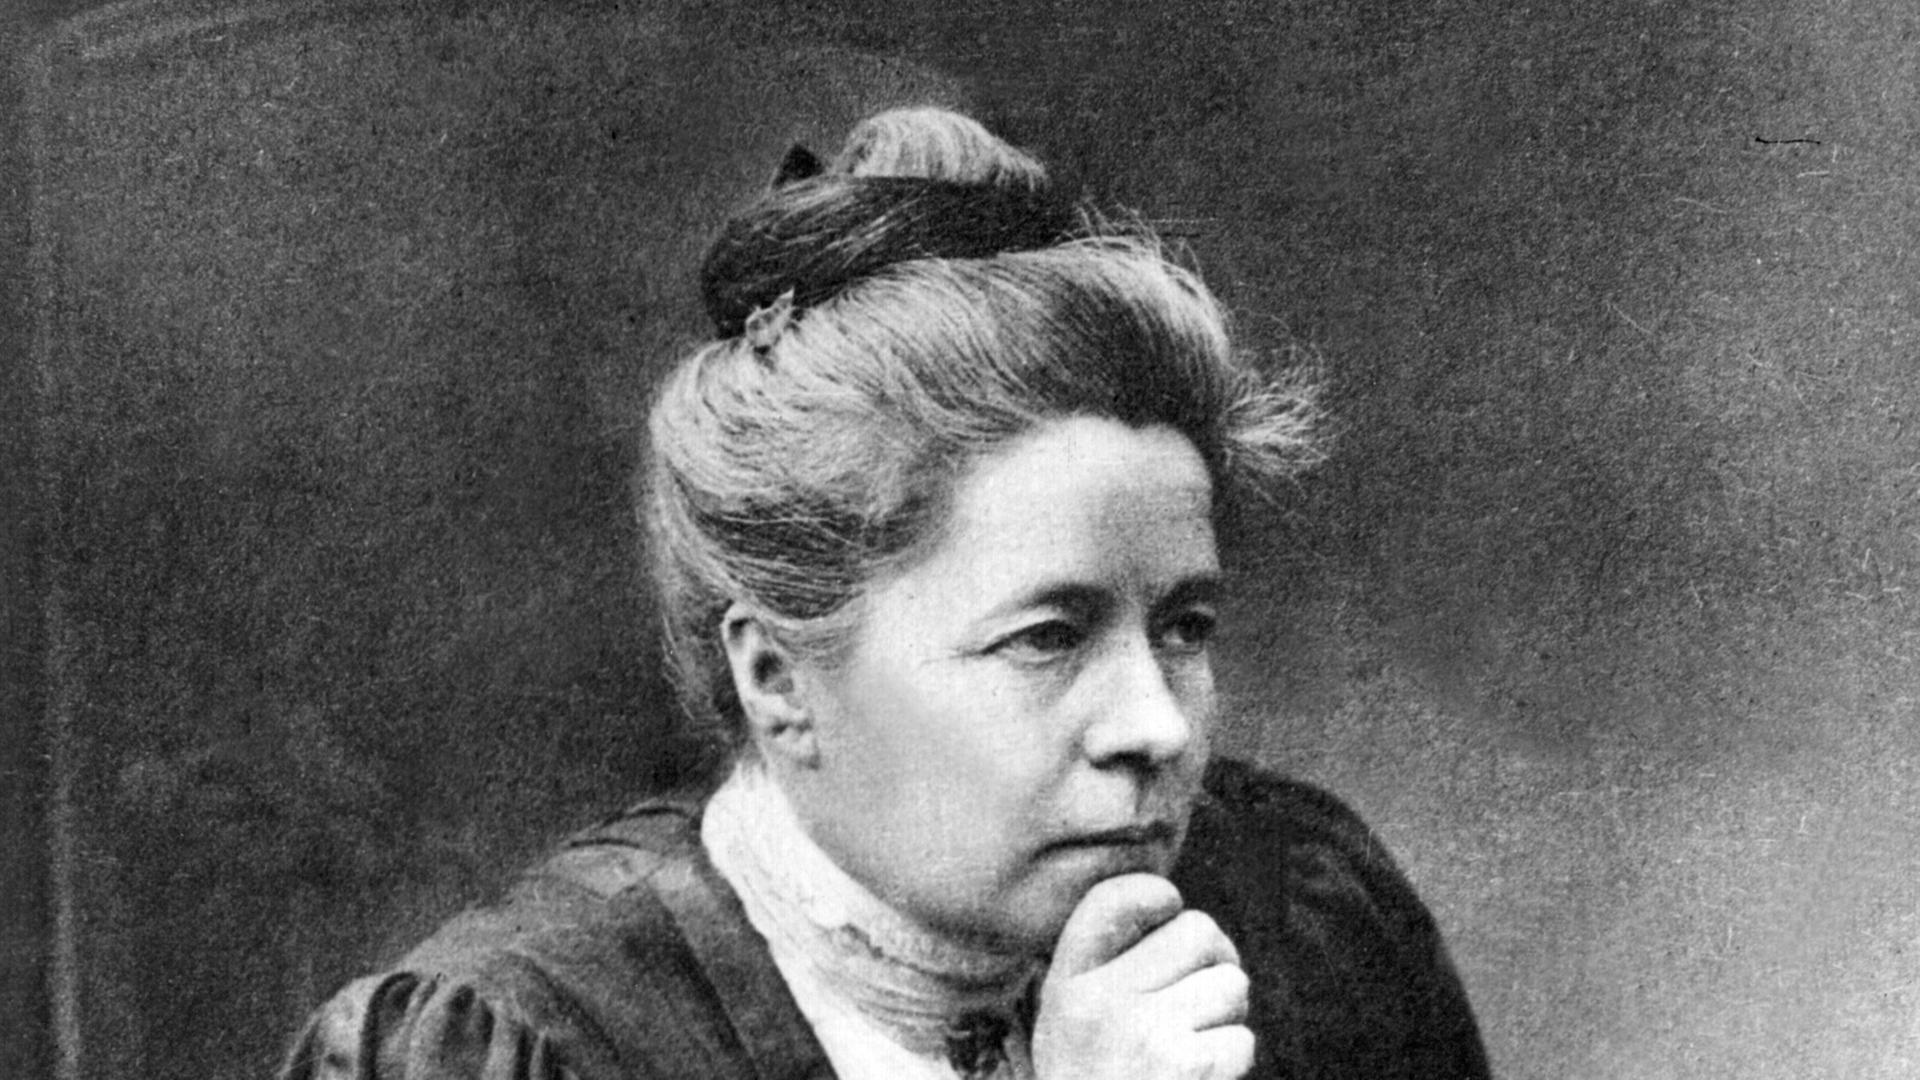 Zeitgenössische Aufnahme der schwedischen Schriftstellerin Selma Lagerlöf. Sie wurde am 20.11.1858 auf Gut Marbacka in Värmland geboren und starb ebenda am 16.3.1940. 1909 erhielt Selma Lagerlöf den Nobelpreis für Literatur.